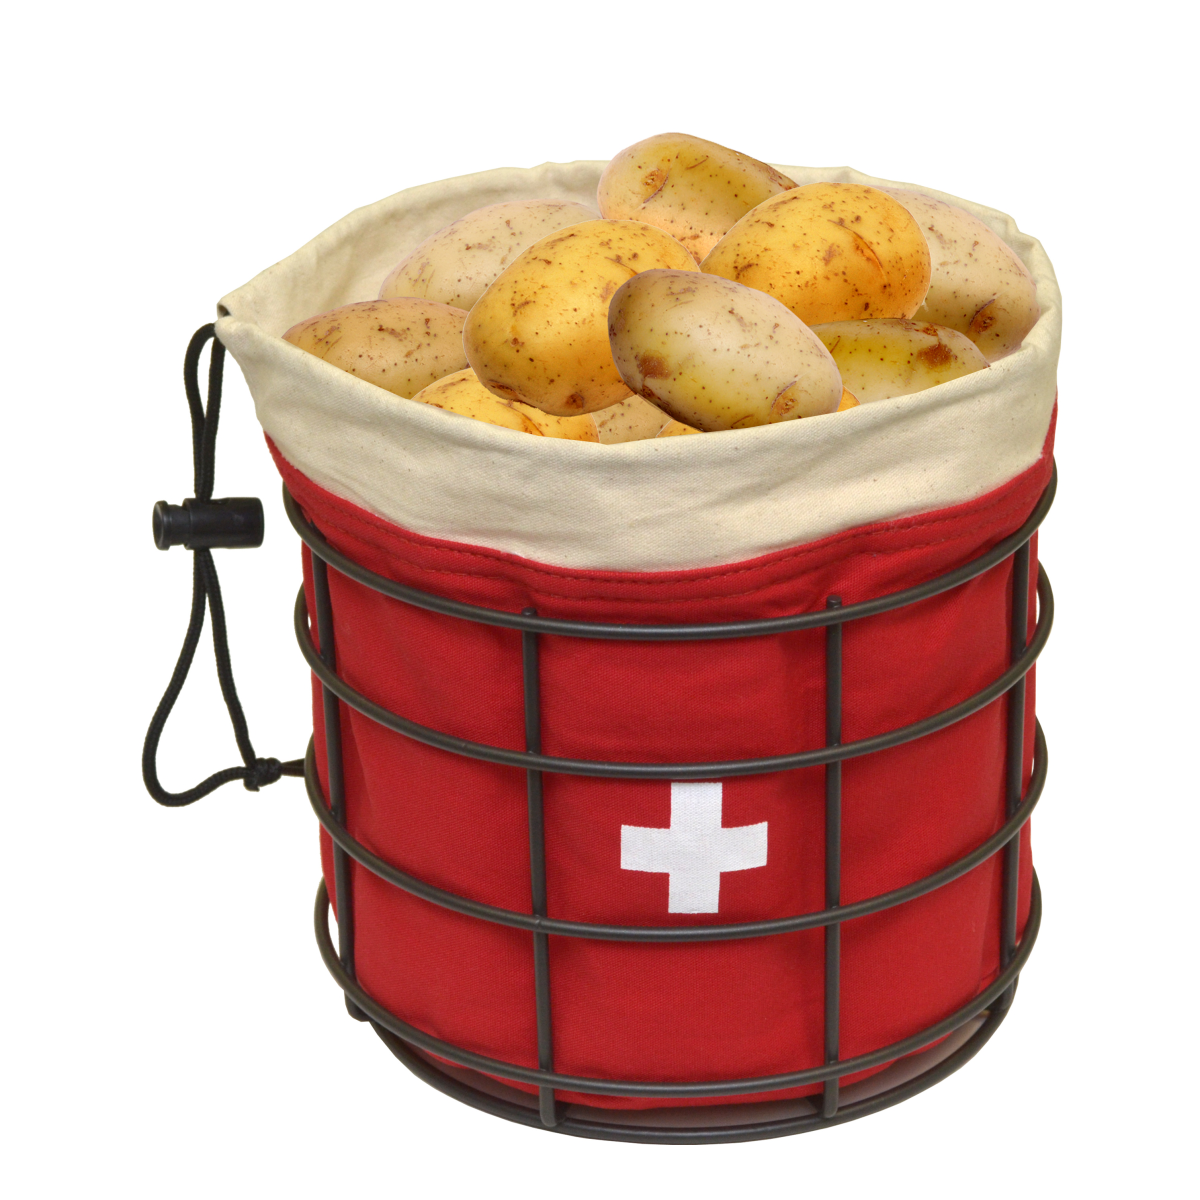 Sac patates rouge croix suisse 19 x 21 cm avec corbeille en fil gris